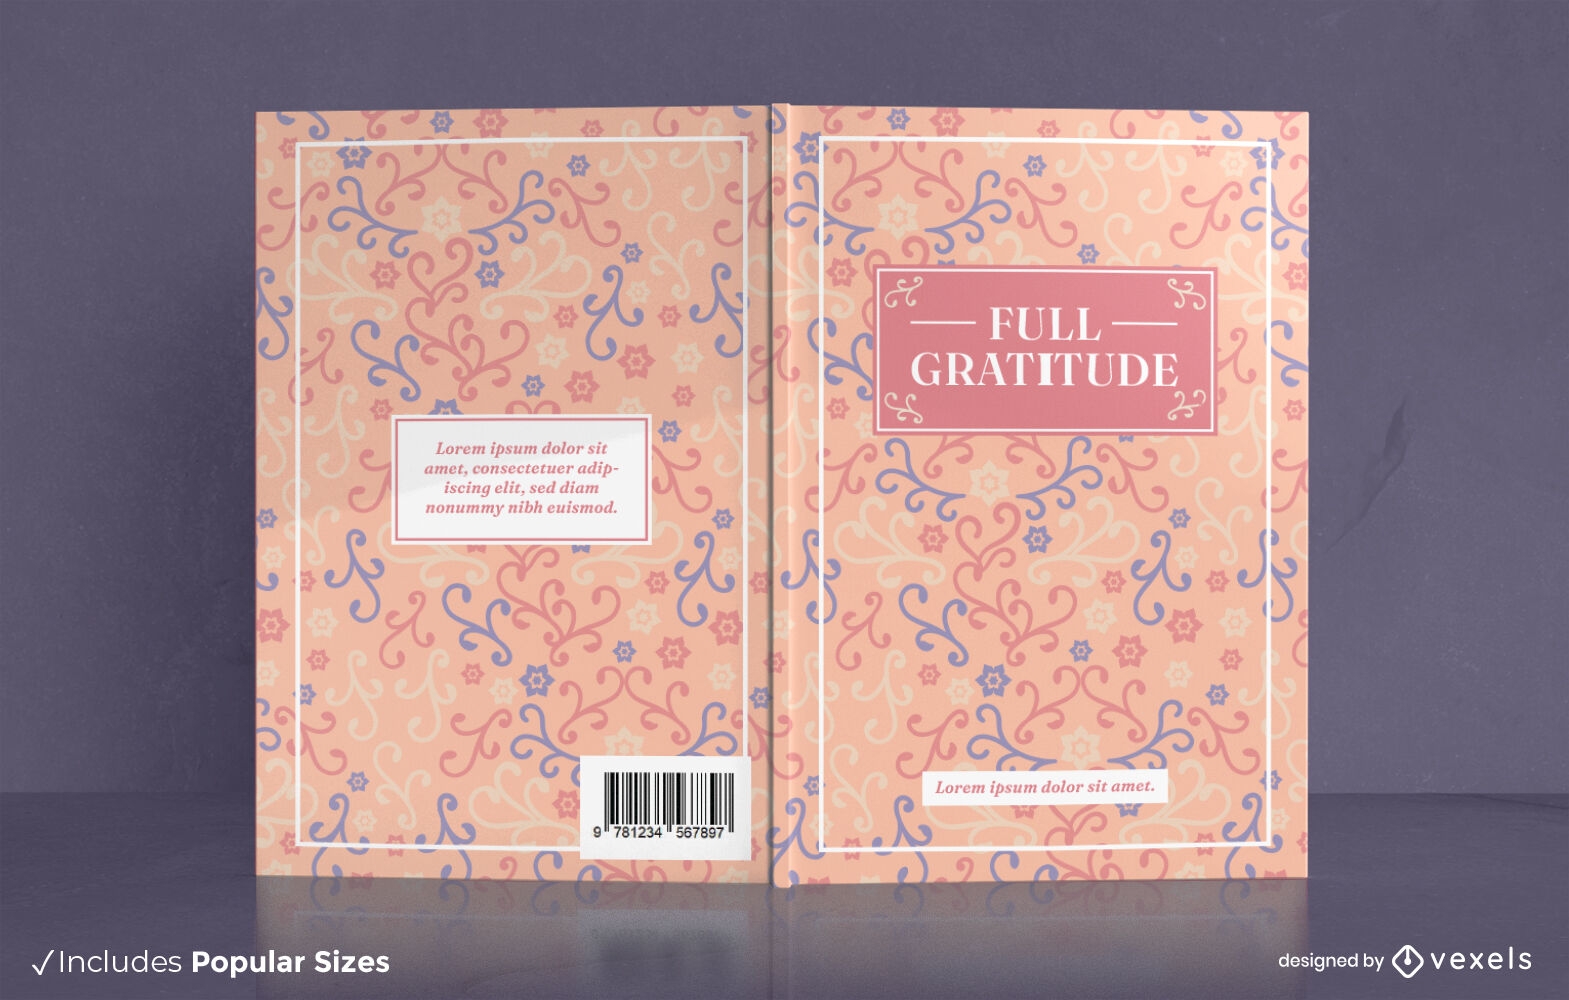 Lovely gratitude journal book cover design